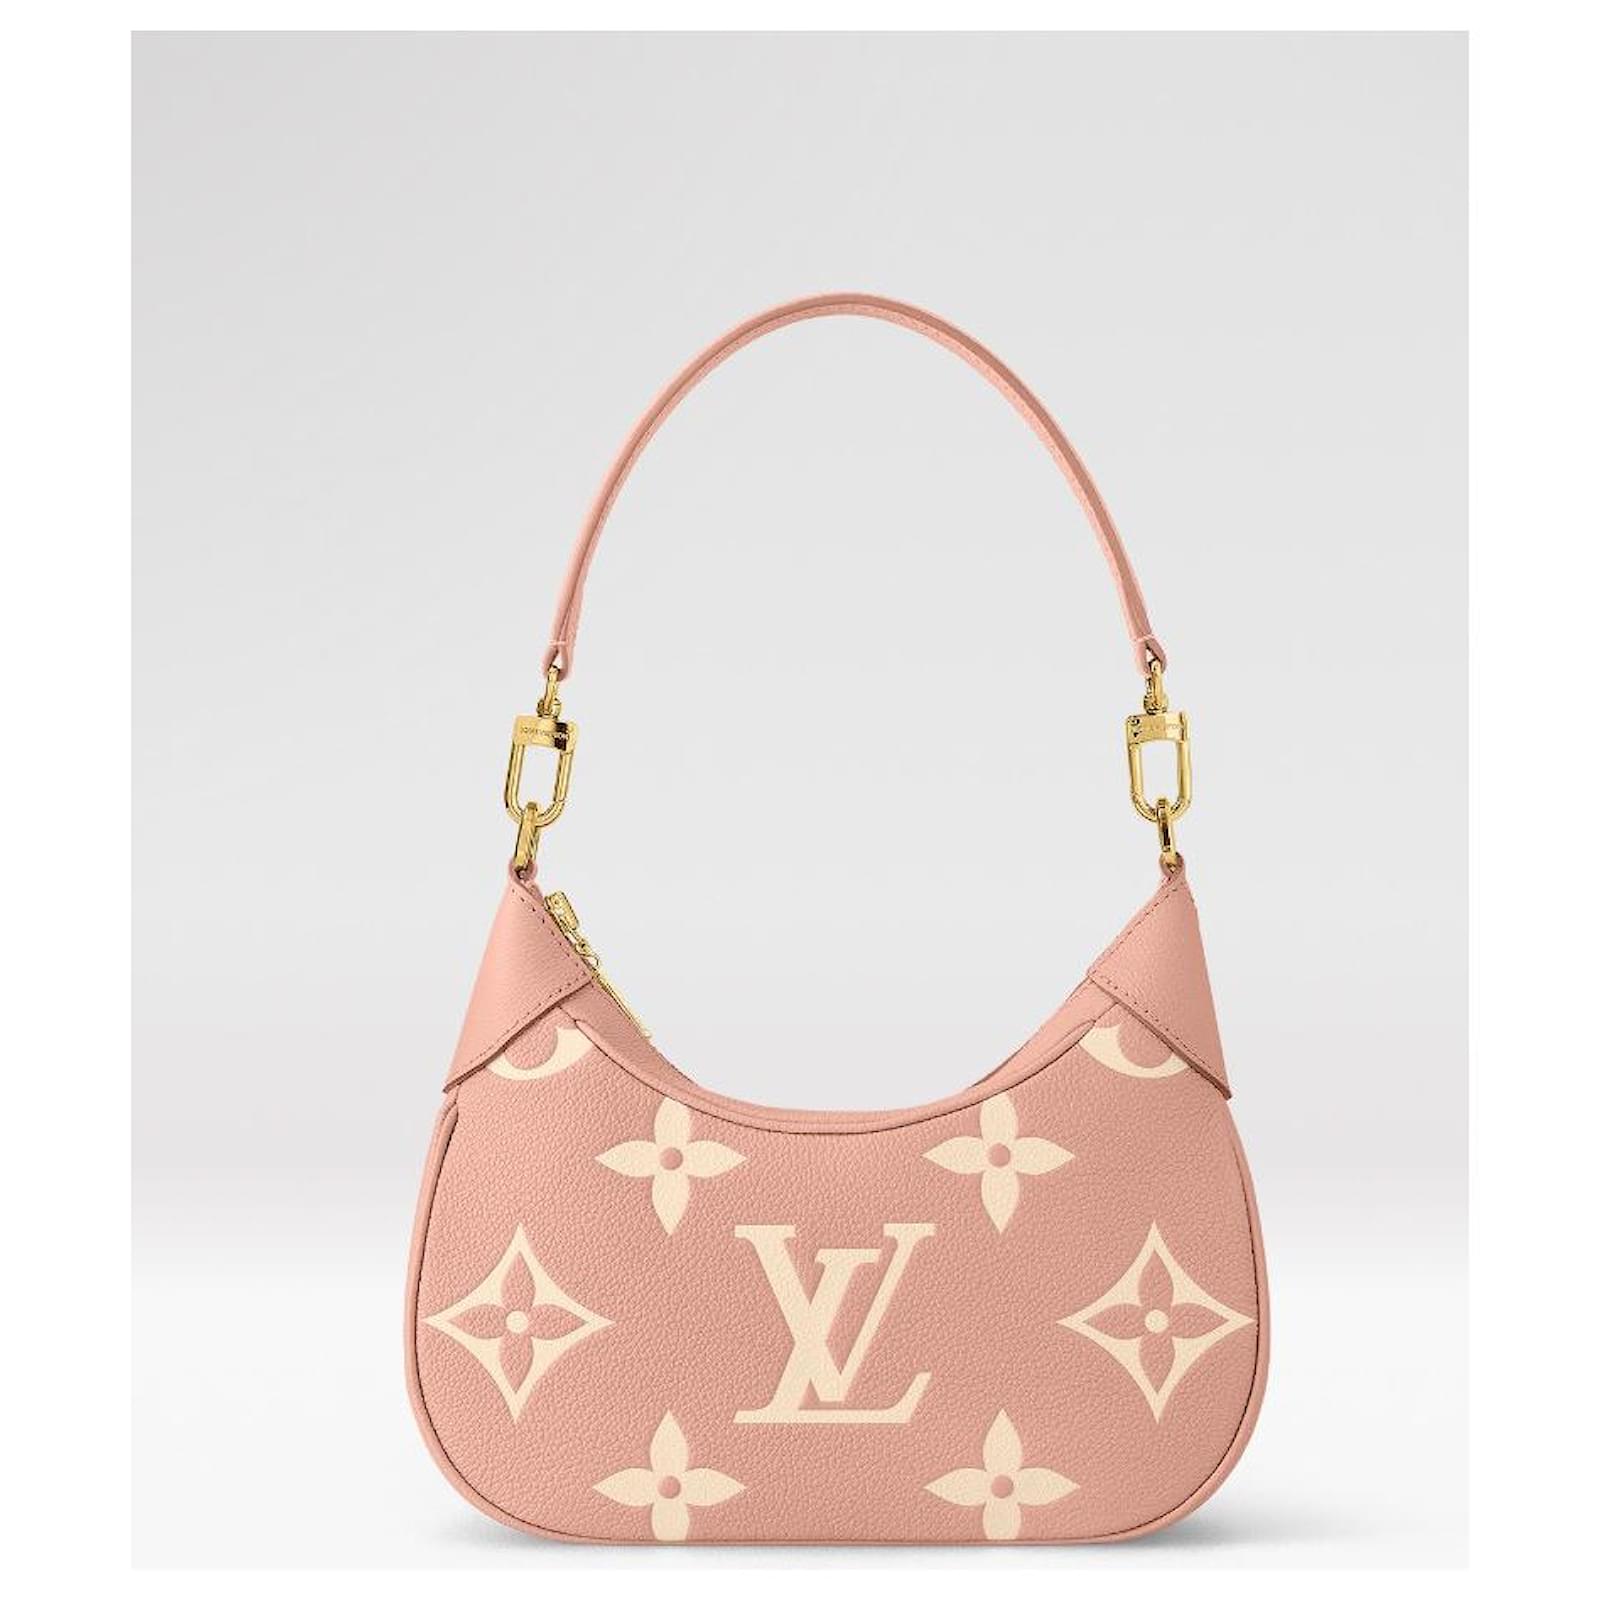 Louis Vuitton hobo bagatelle borsa a spalla